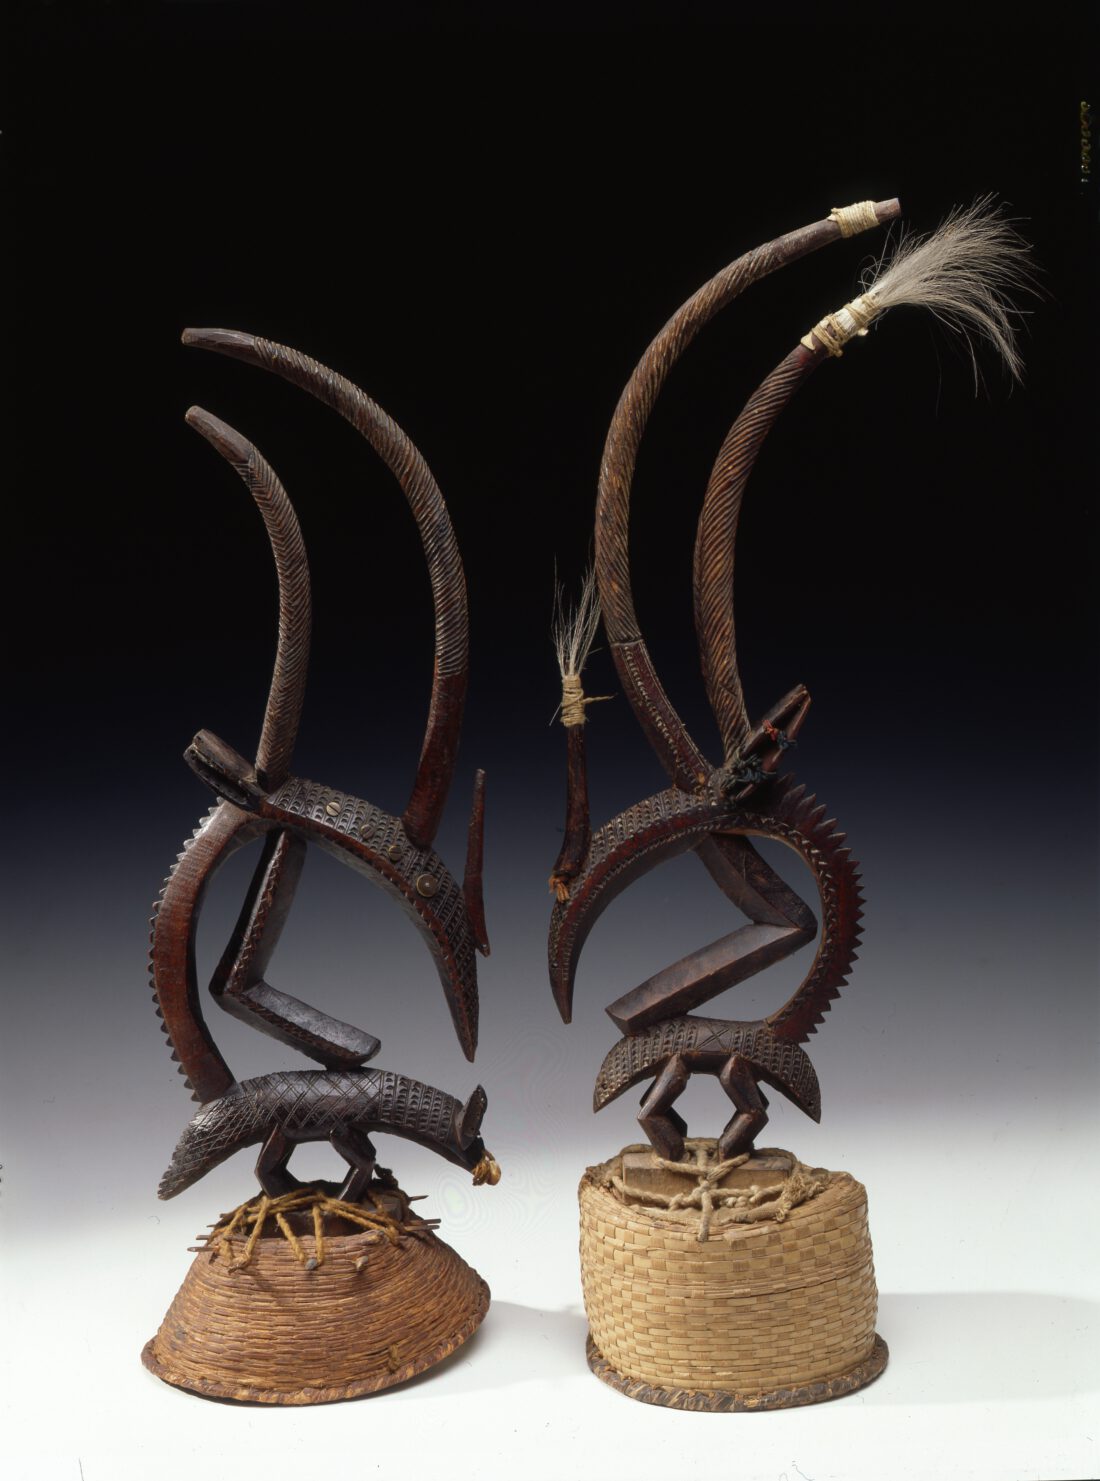 Zwei Masken (Kopfschmuck) aus Holz, die Antilopen darstellen